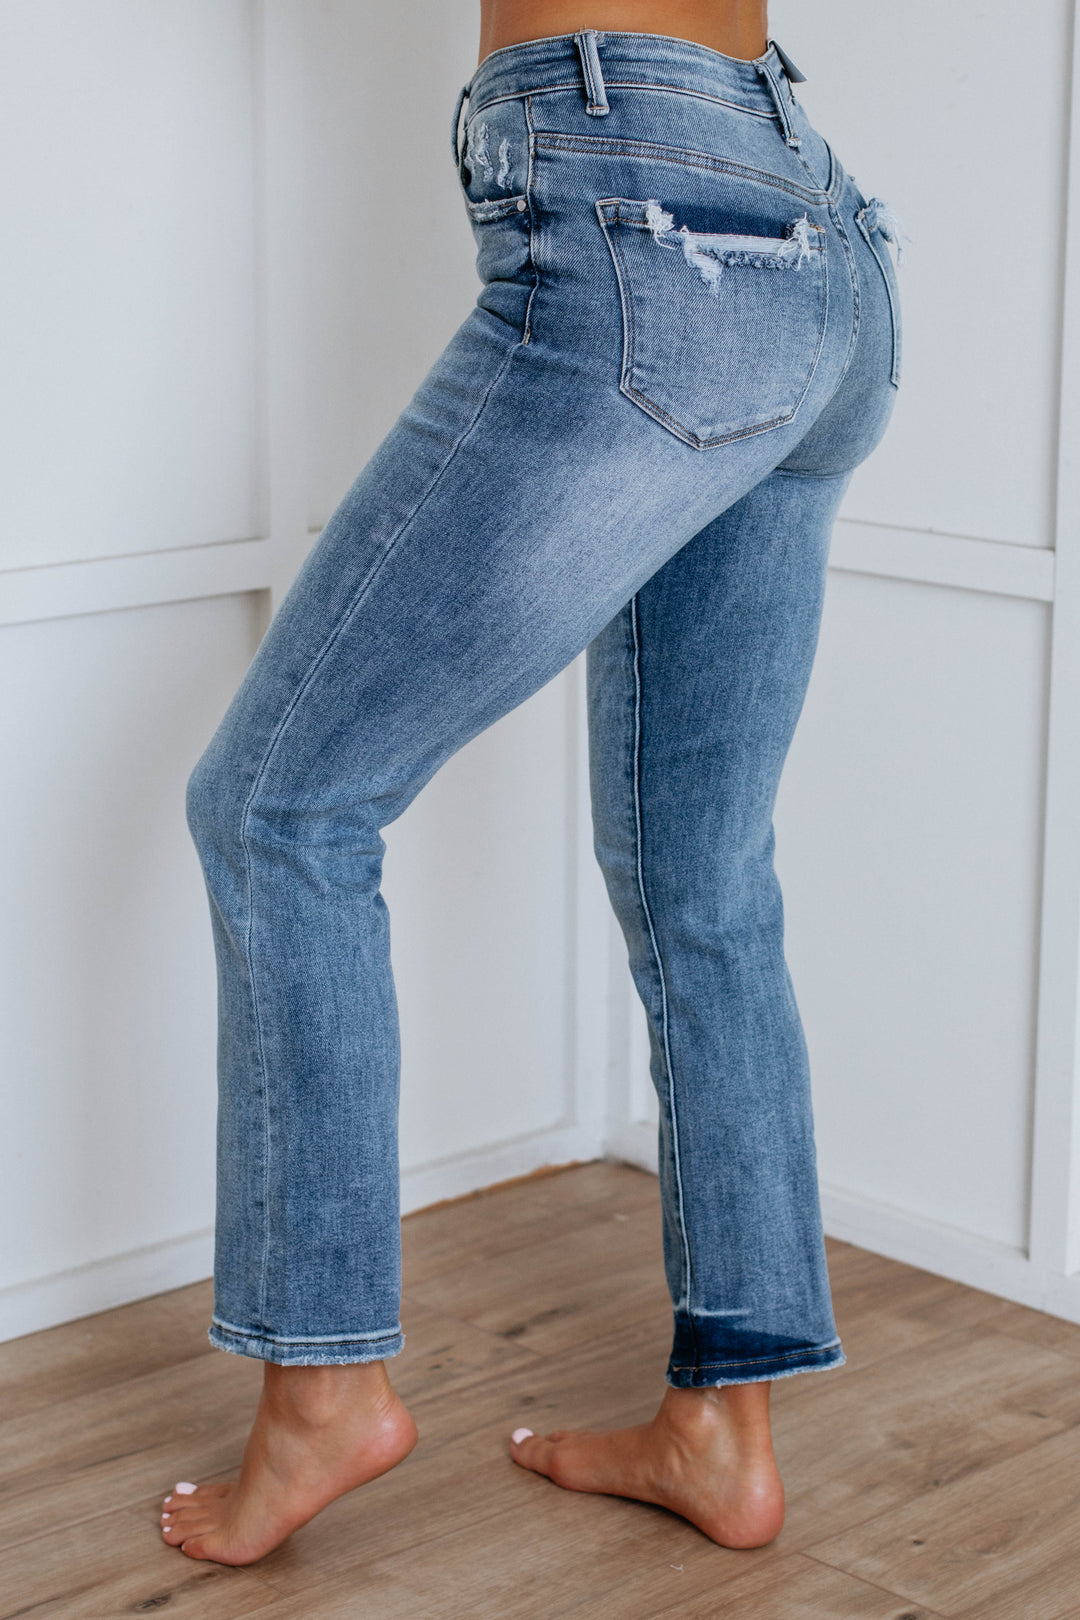 Sofia Risen Jeans